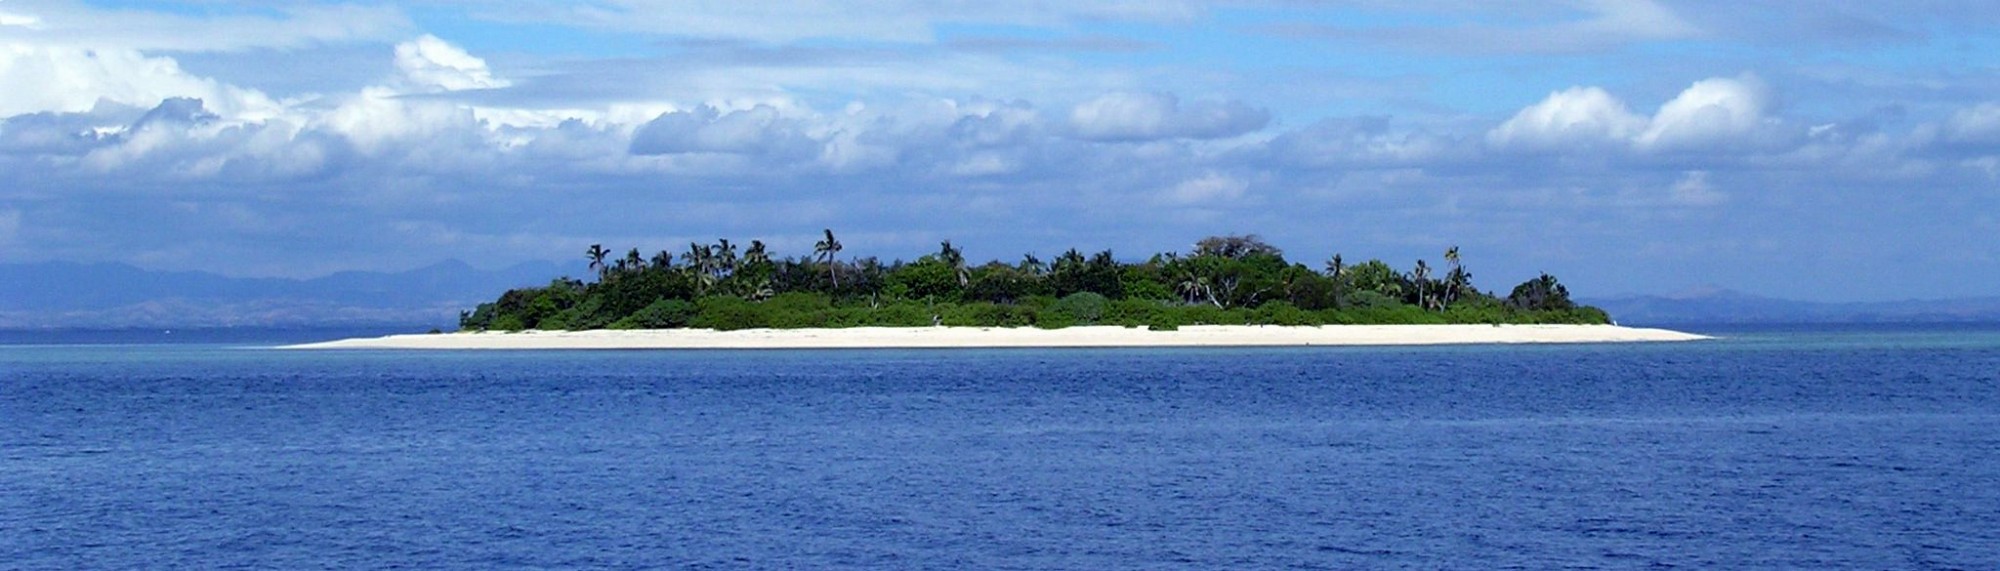 Island near Fiji